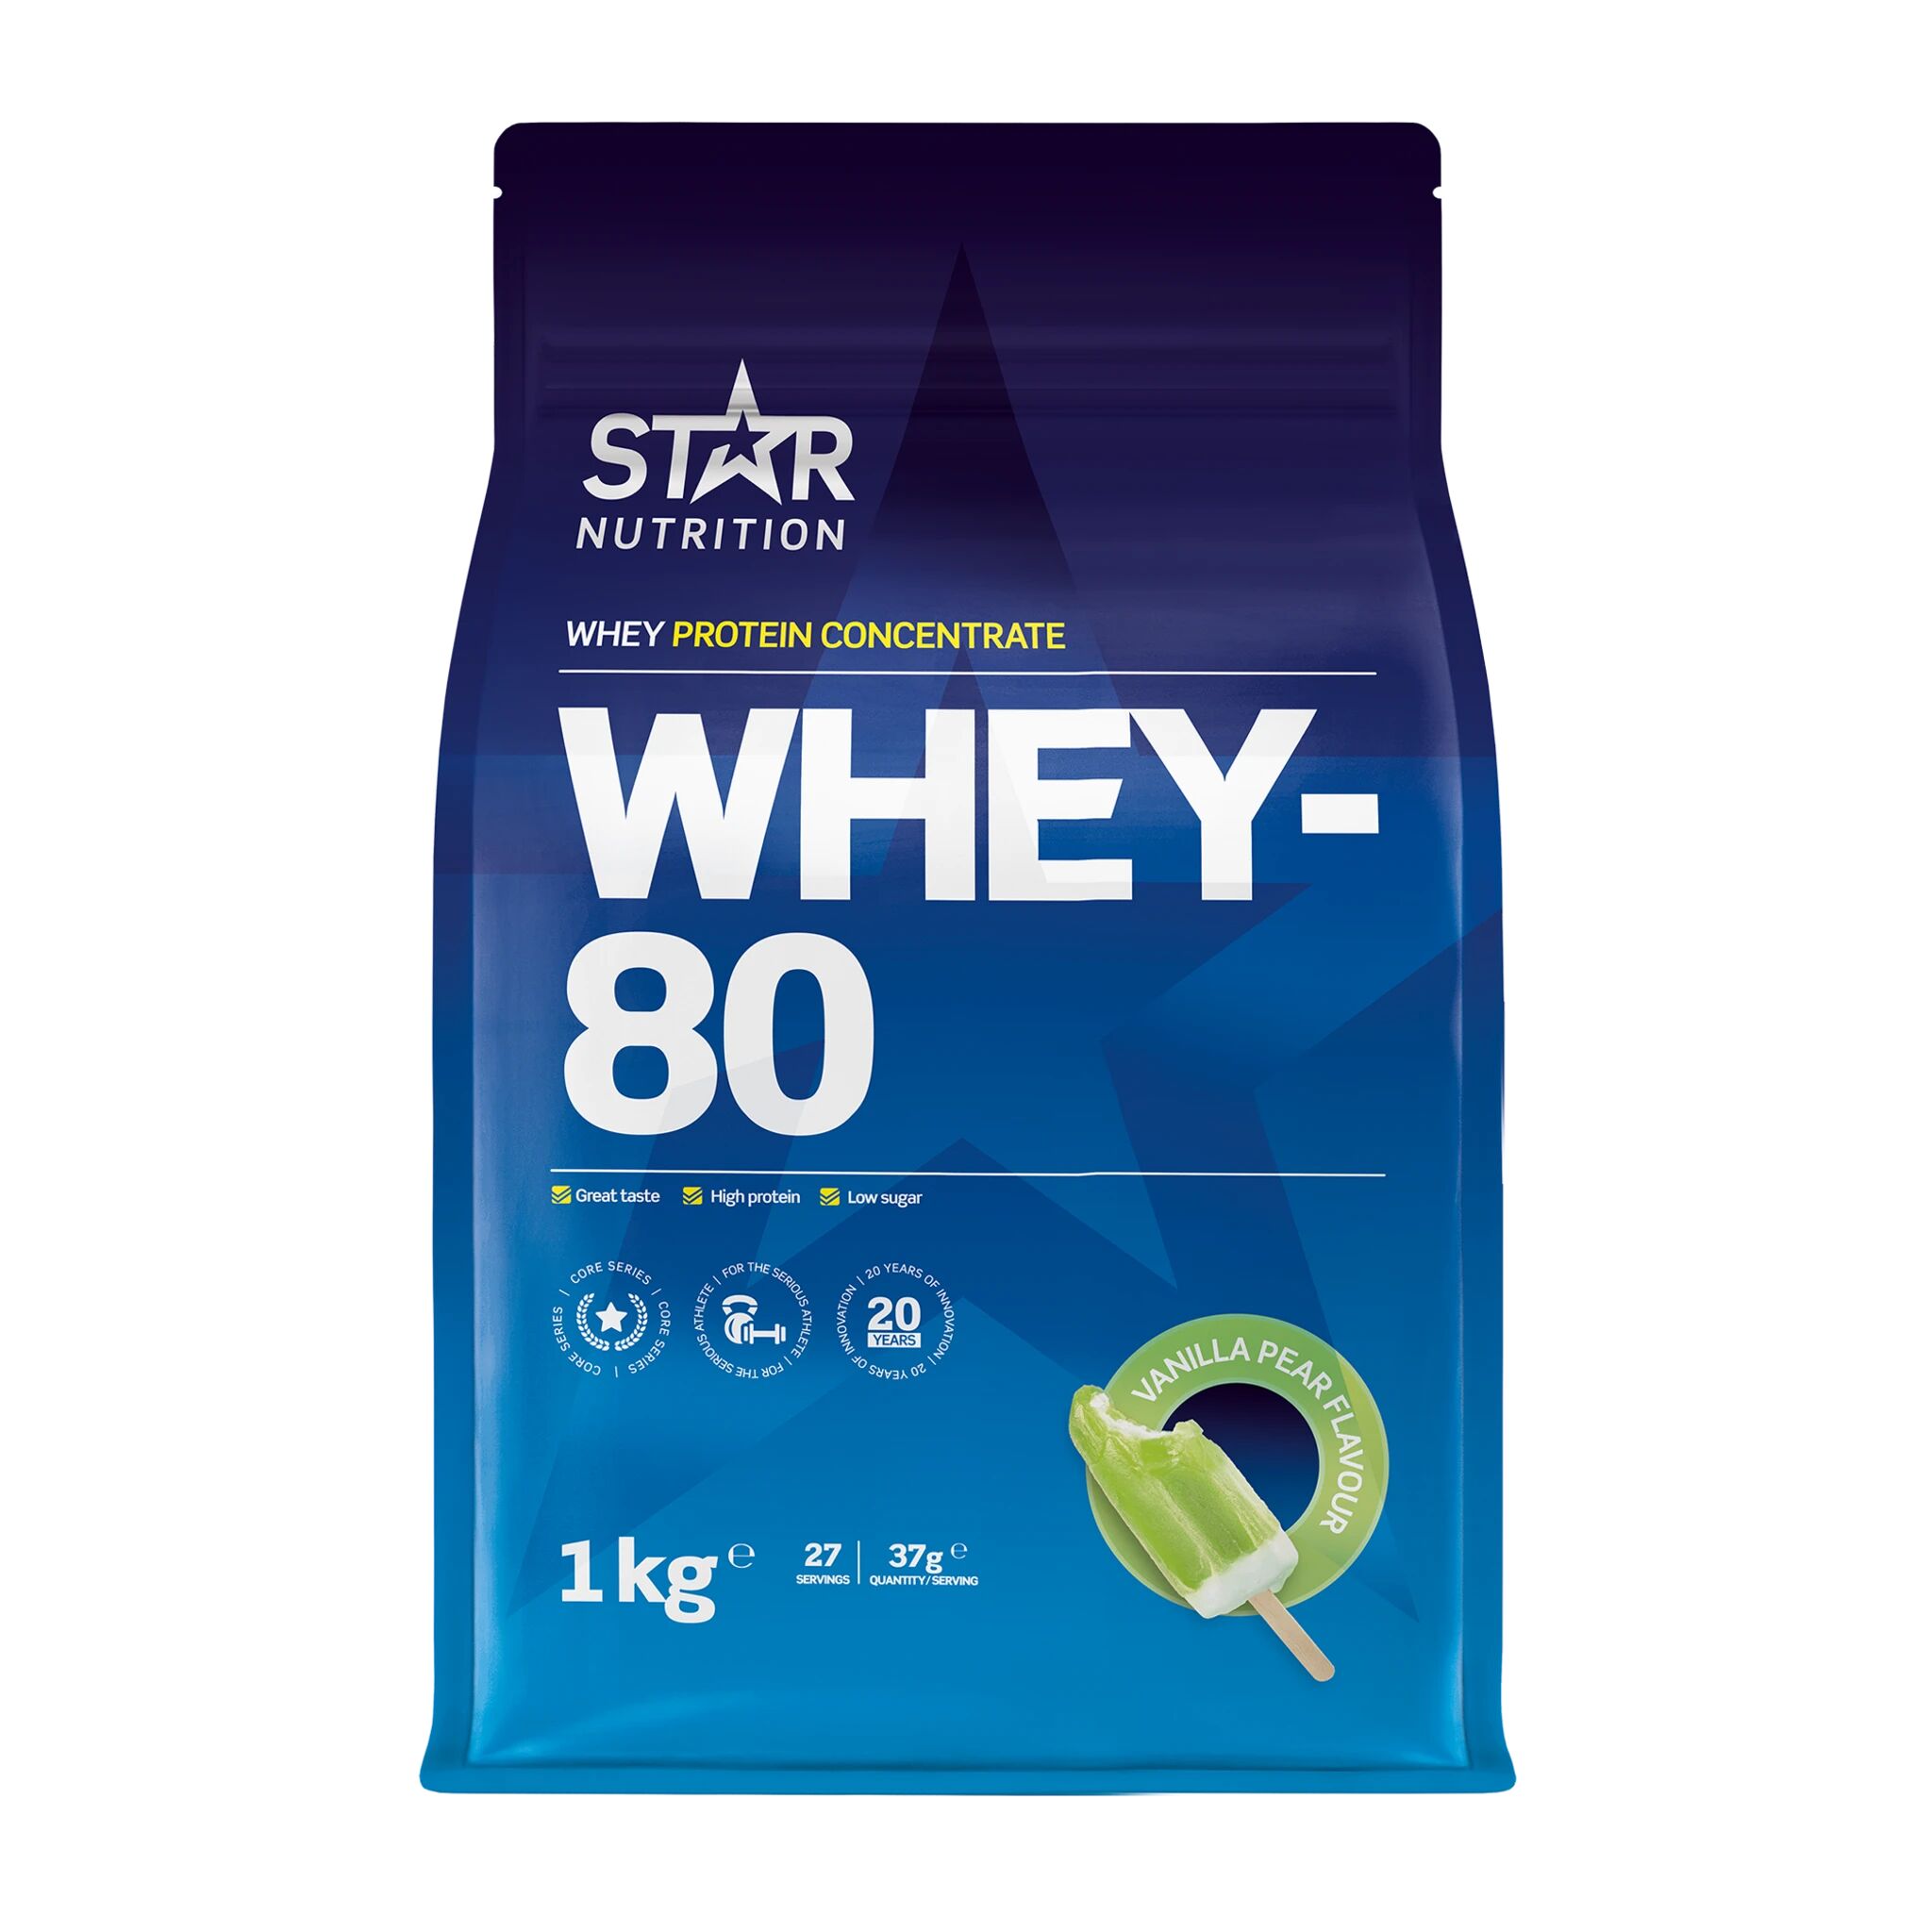 Star Nutrition Whey-80, proteinpulver 1000g Vanillapear